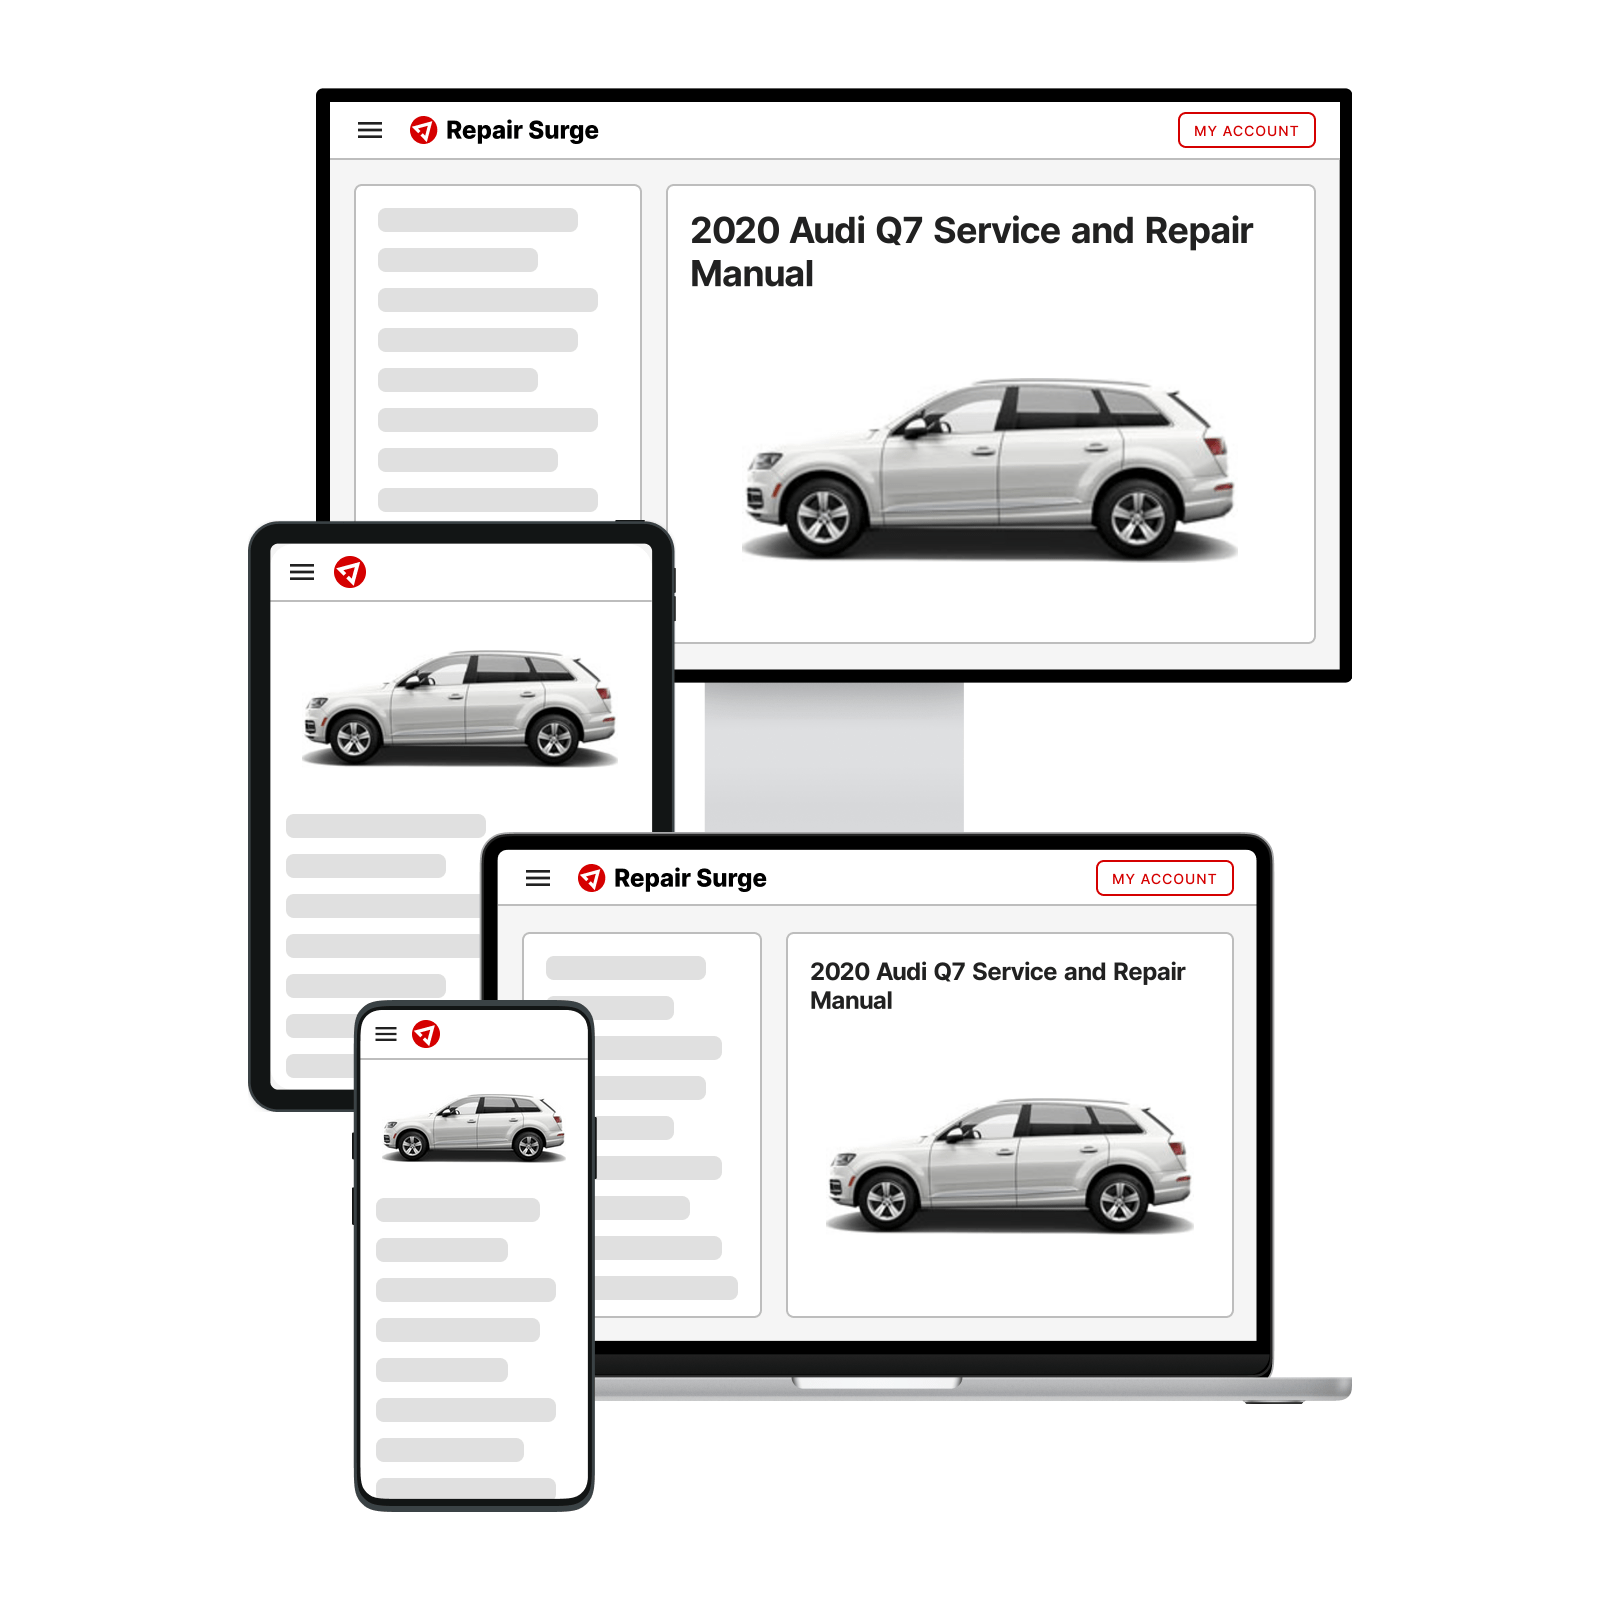 2020 Audi Q7 service and repair manual hero image